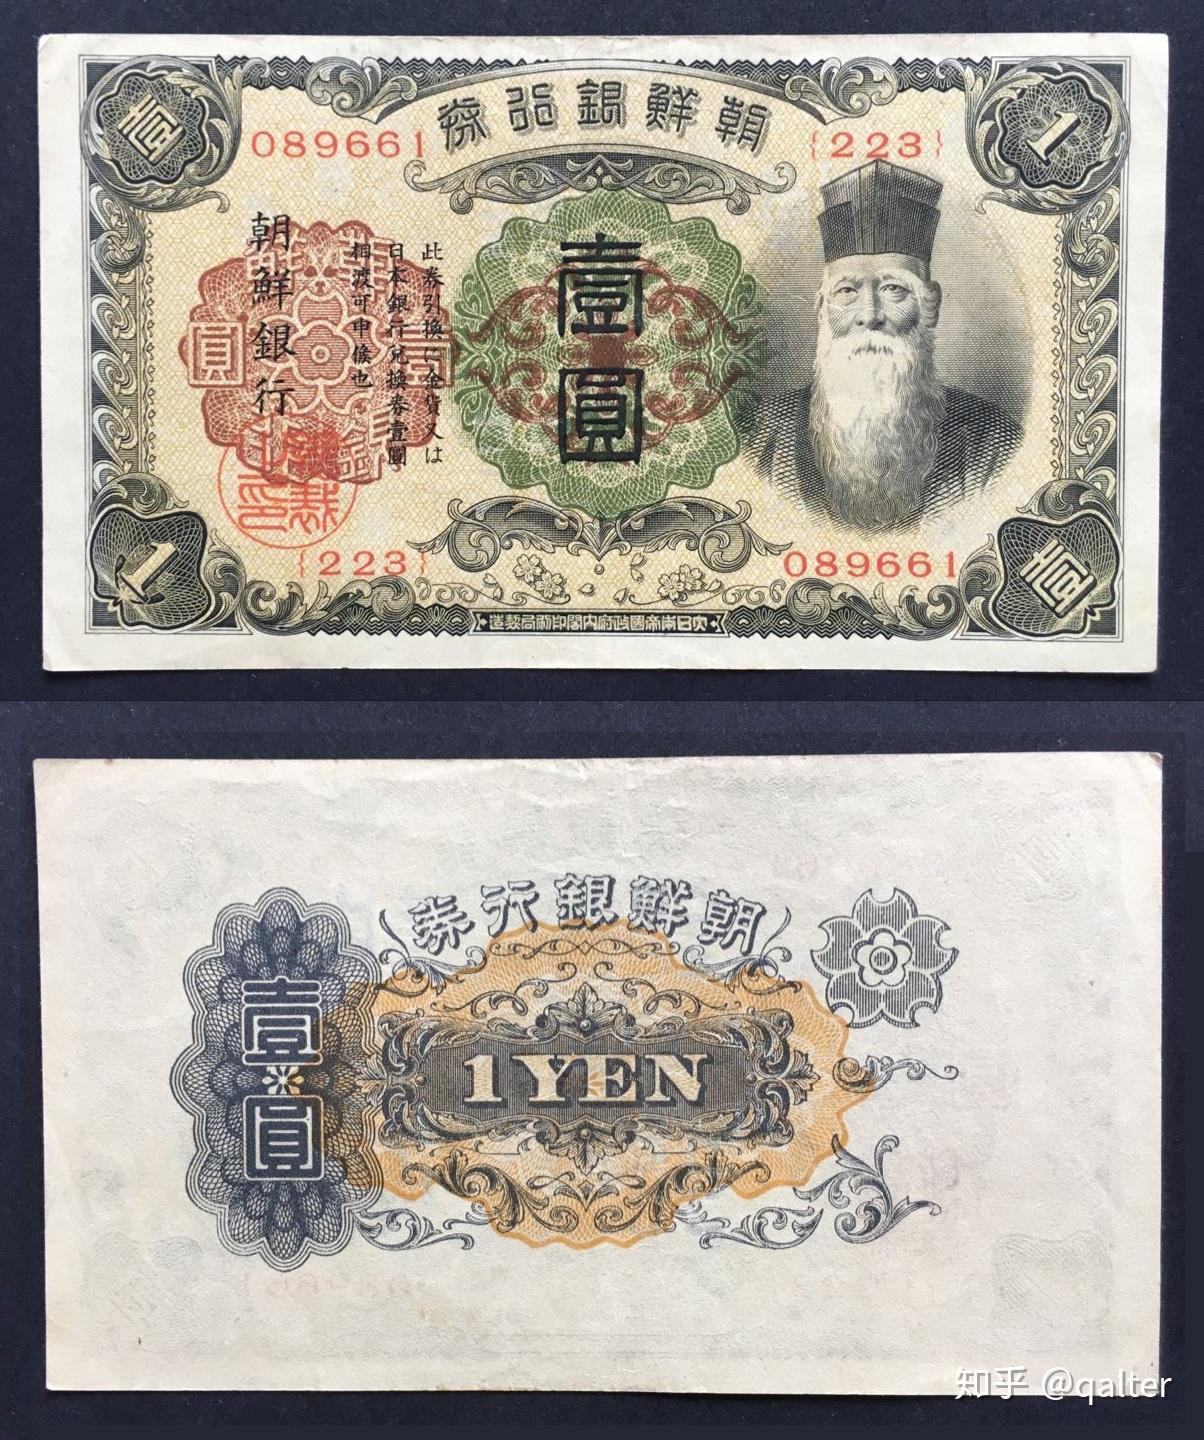 日本货币日元 库存照片. 图片 包括有 外部, 票据, 日元, 日本, 财务, 横幅提供资金的, 班珠尔 - 38522008